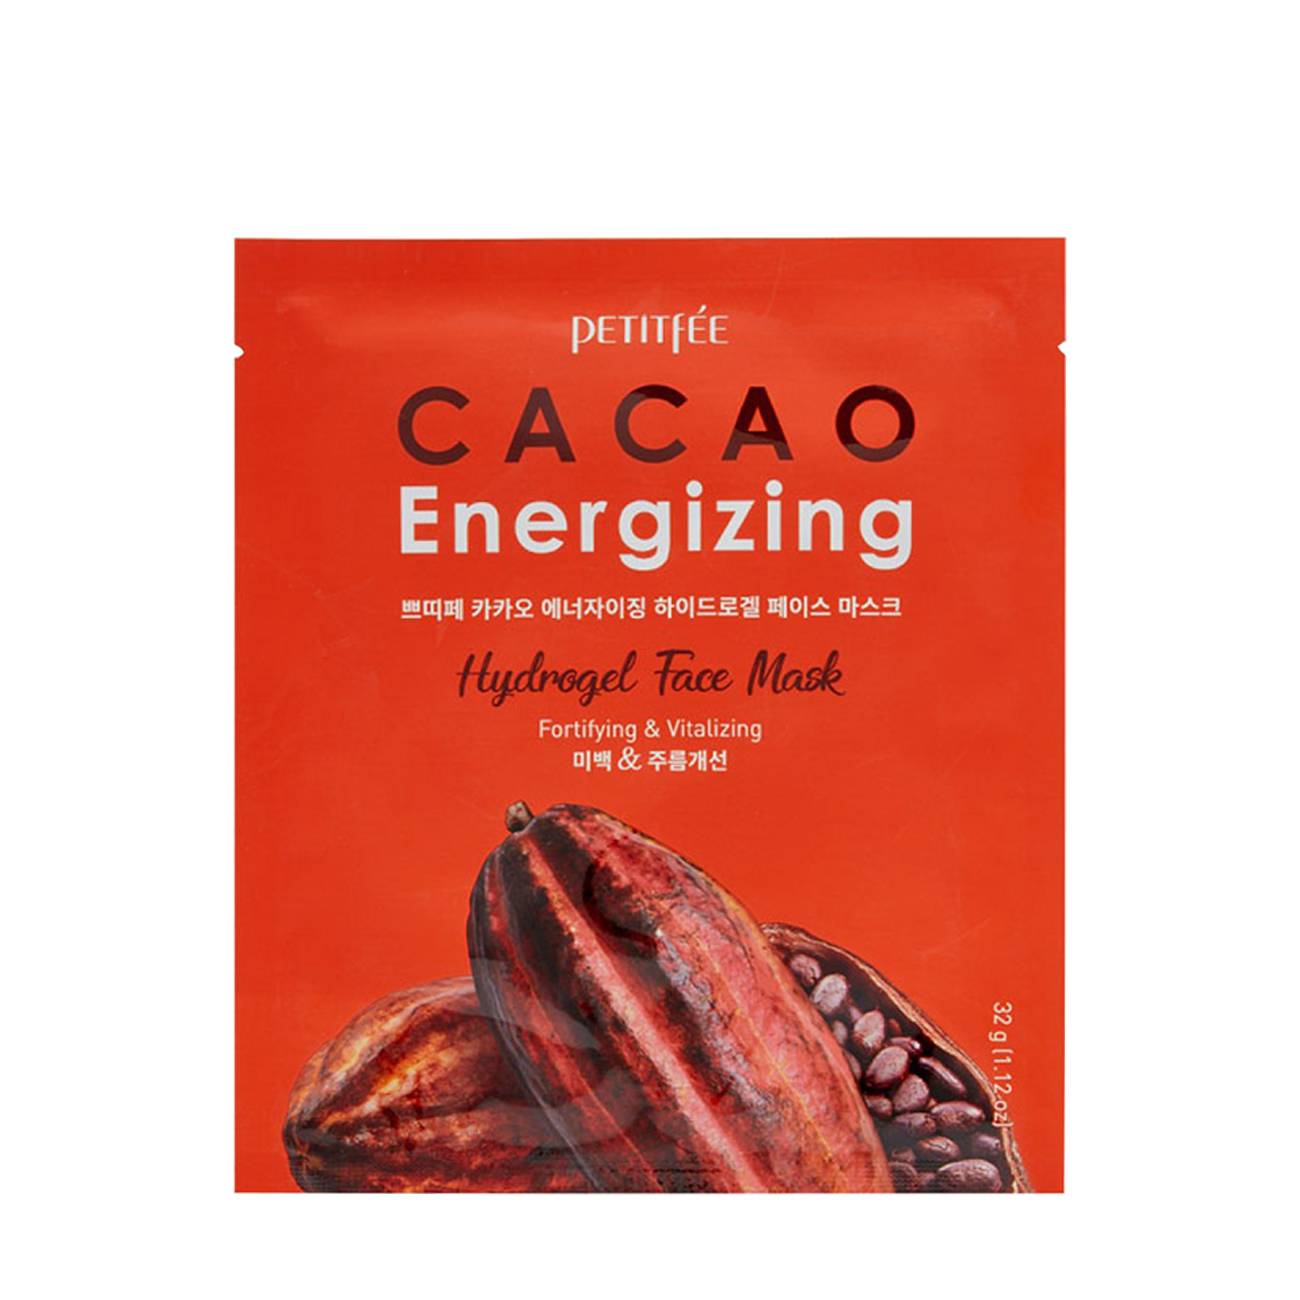 Cacao Energizing Hydrogel Face Mask 32 gr bestvalue.eu